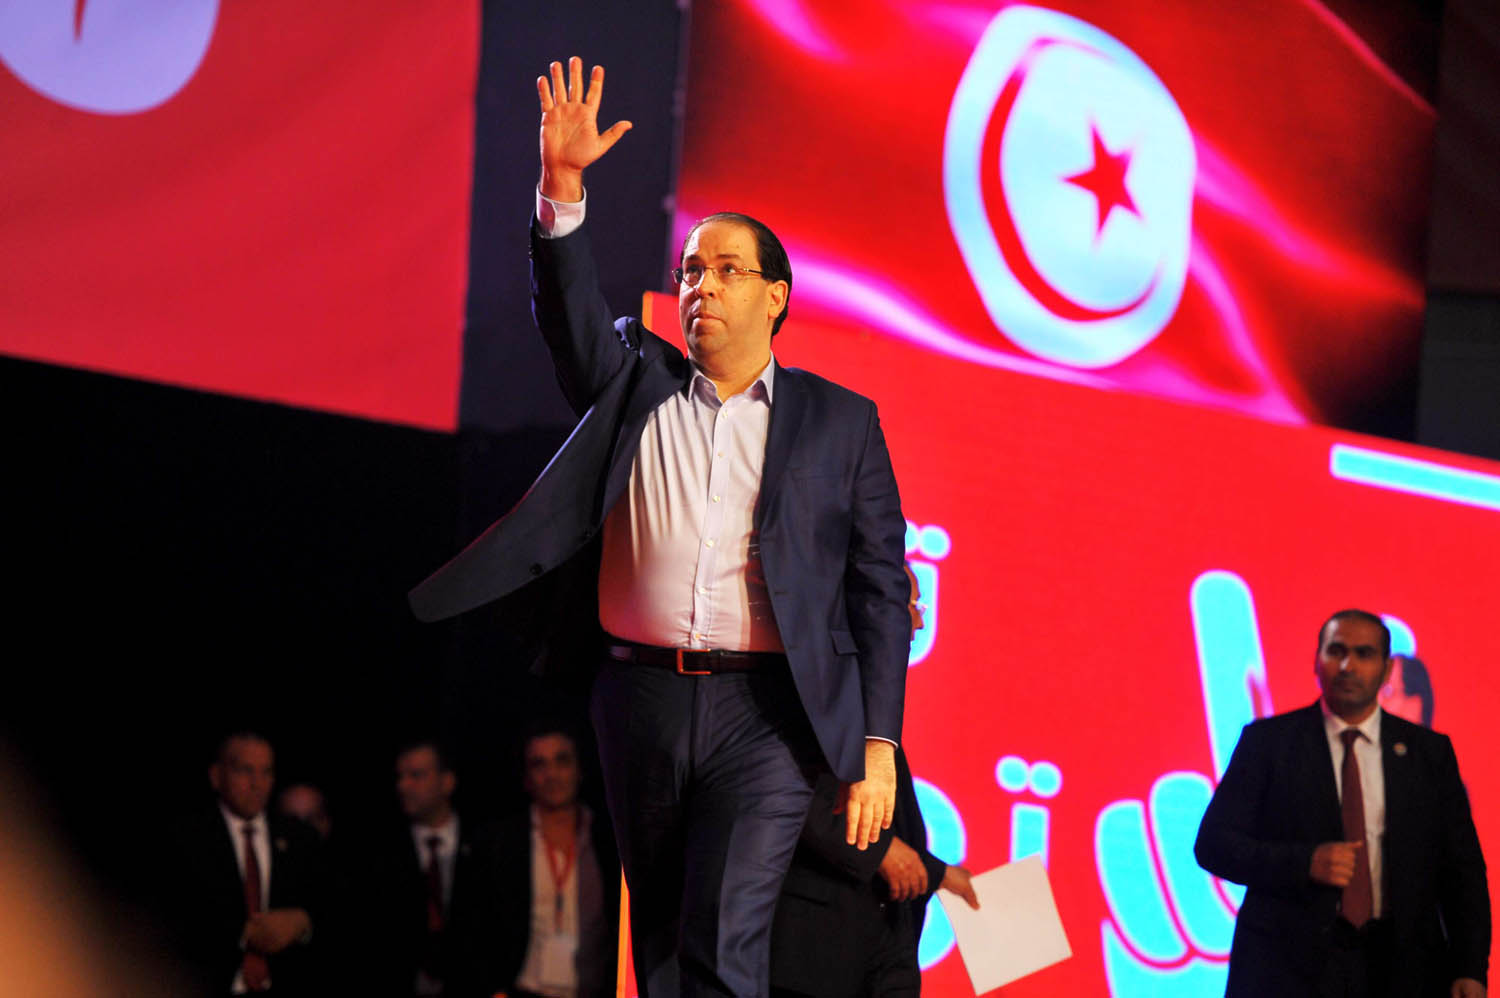 رئيس الحكومة التونسية يوسف الشاهد في حفل اطلاق حزبه "تحيا تونس"